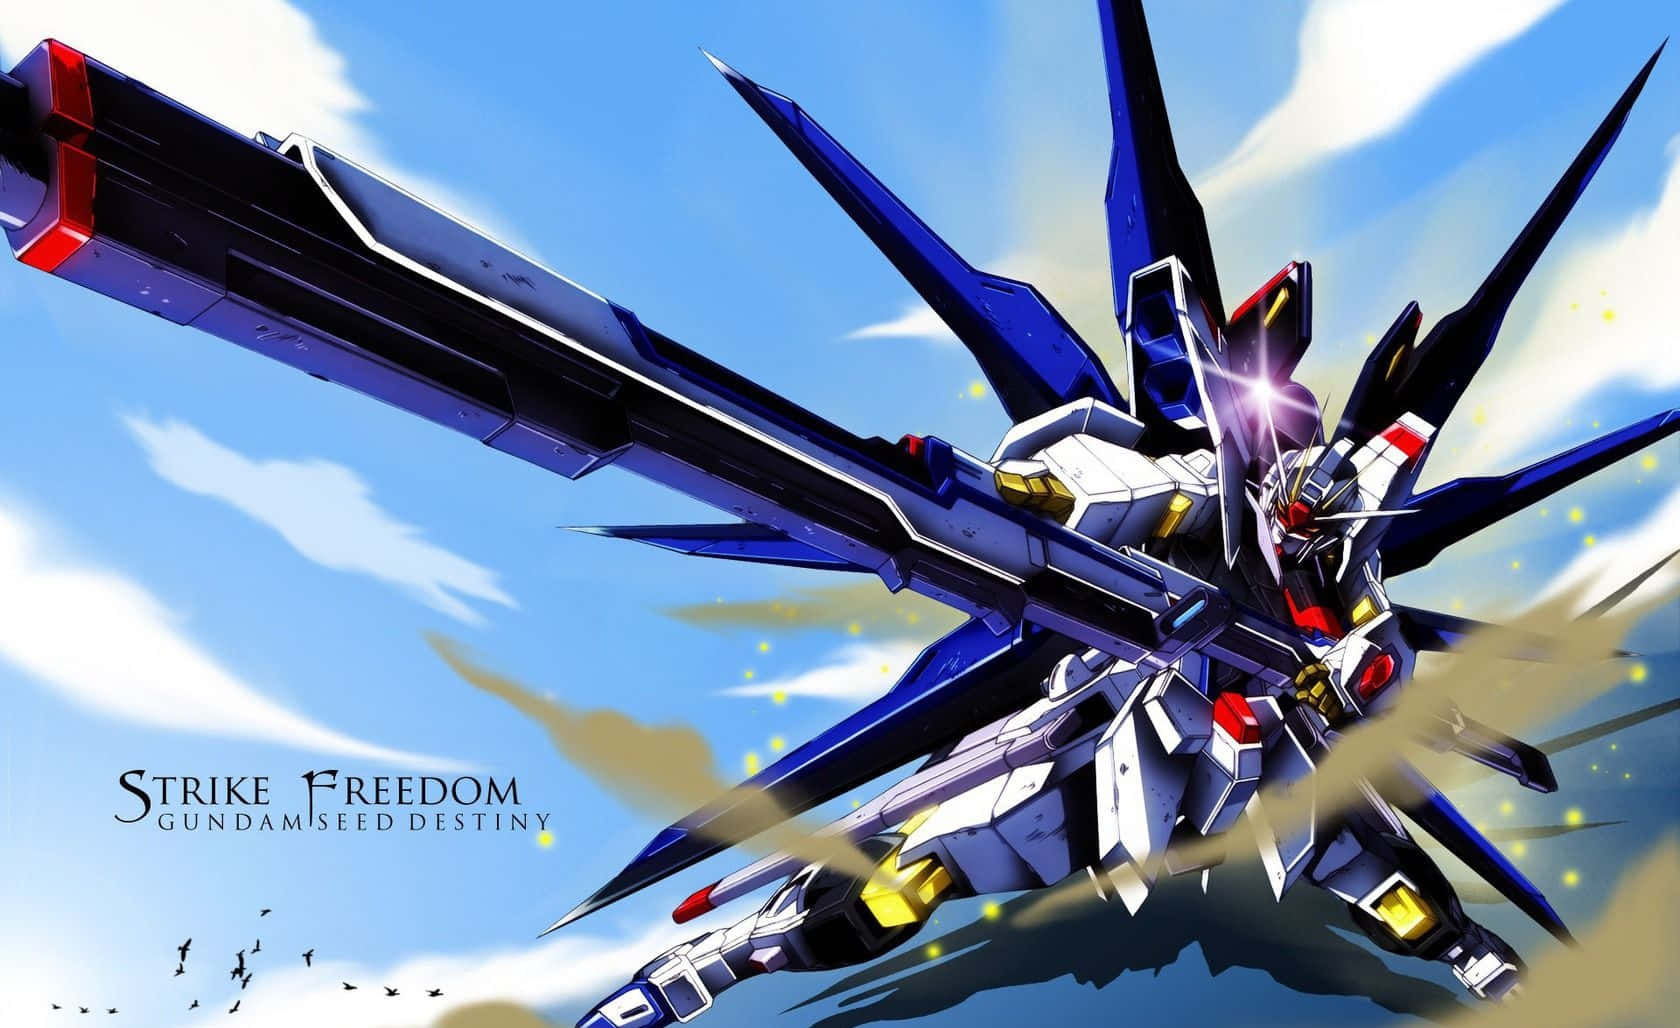 Levantese E Defenda A Humanidade Com O Poderoso Mobile Suit Gundam!